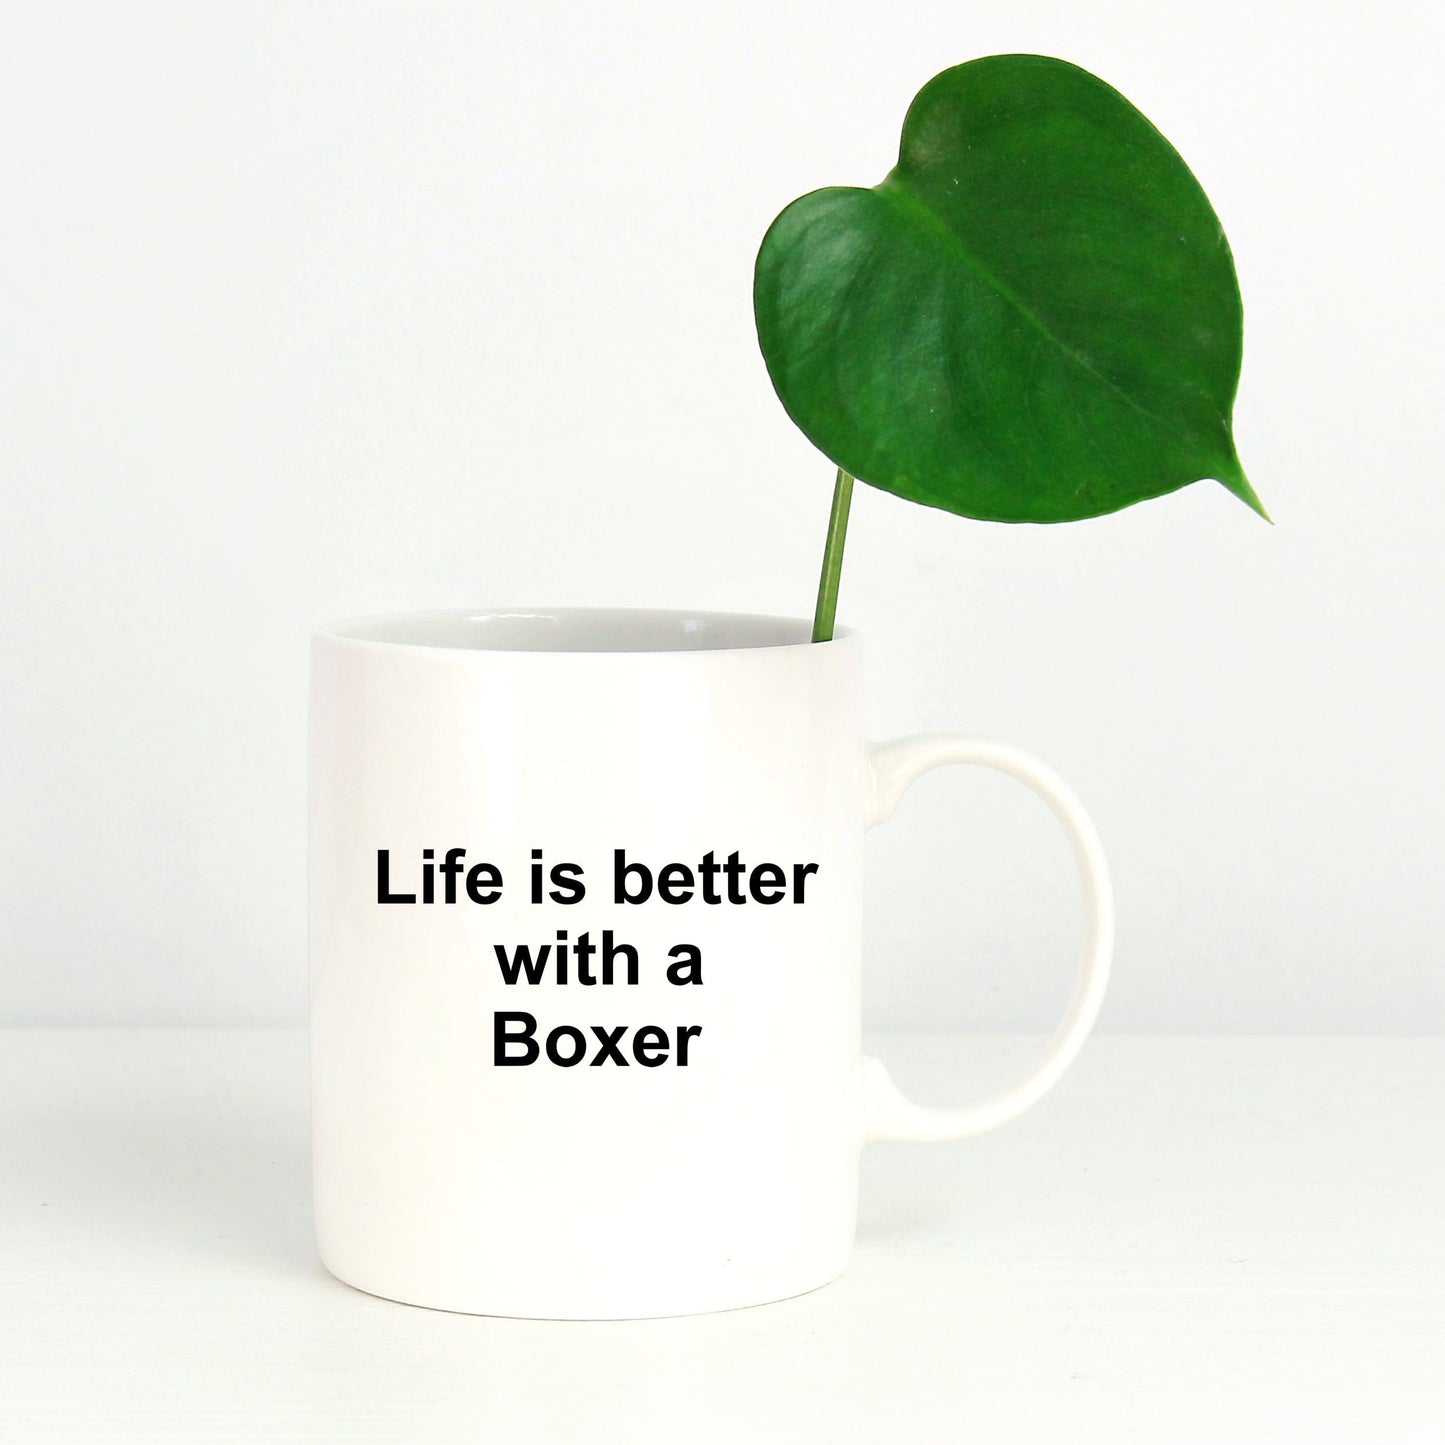 Boxer Dog Owner Lover Gift Life is Better White Ceramic Coffee Mug